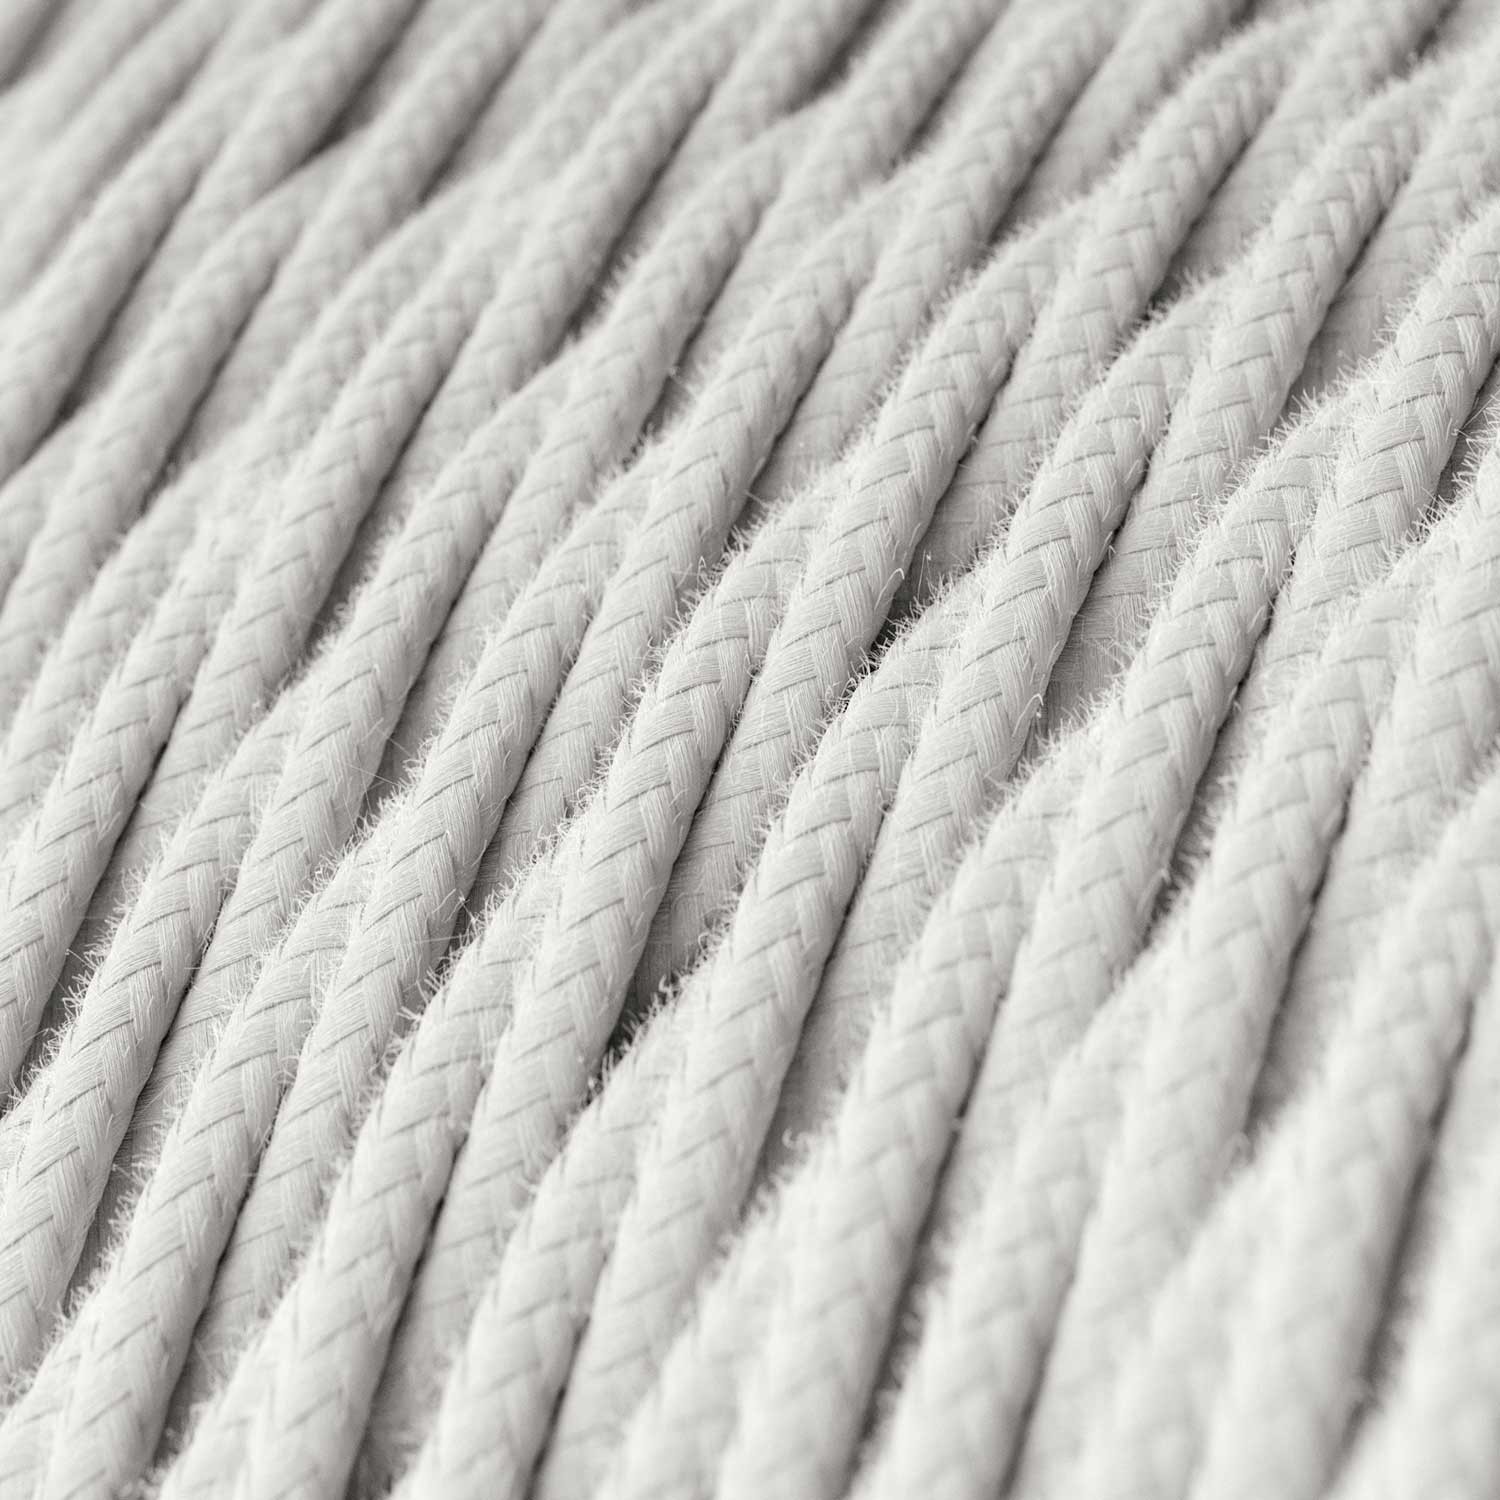 Textilkabel, lichtweiß, aus Baumwolle - Das Original von Creative-Cables - TC01 geflochten 2x0.75mm / 3x0.75mm